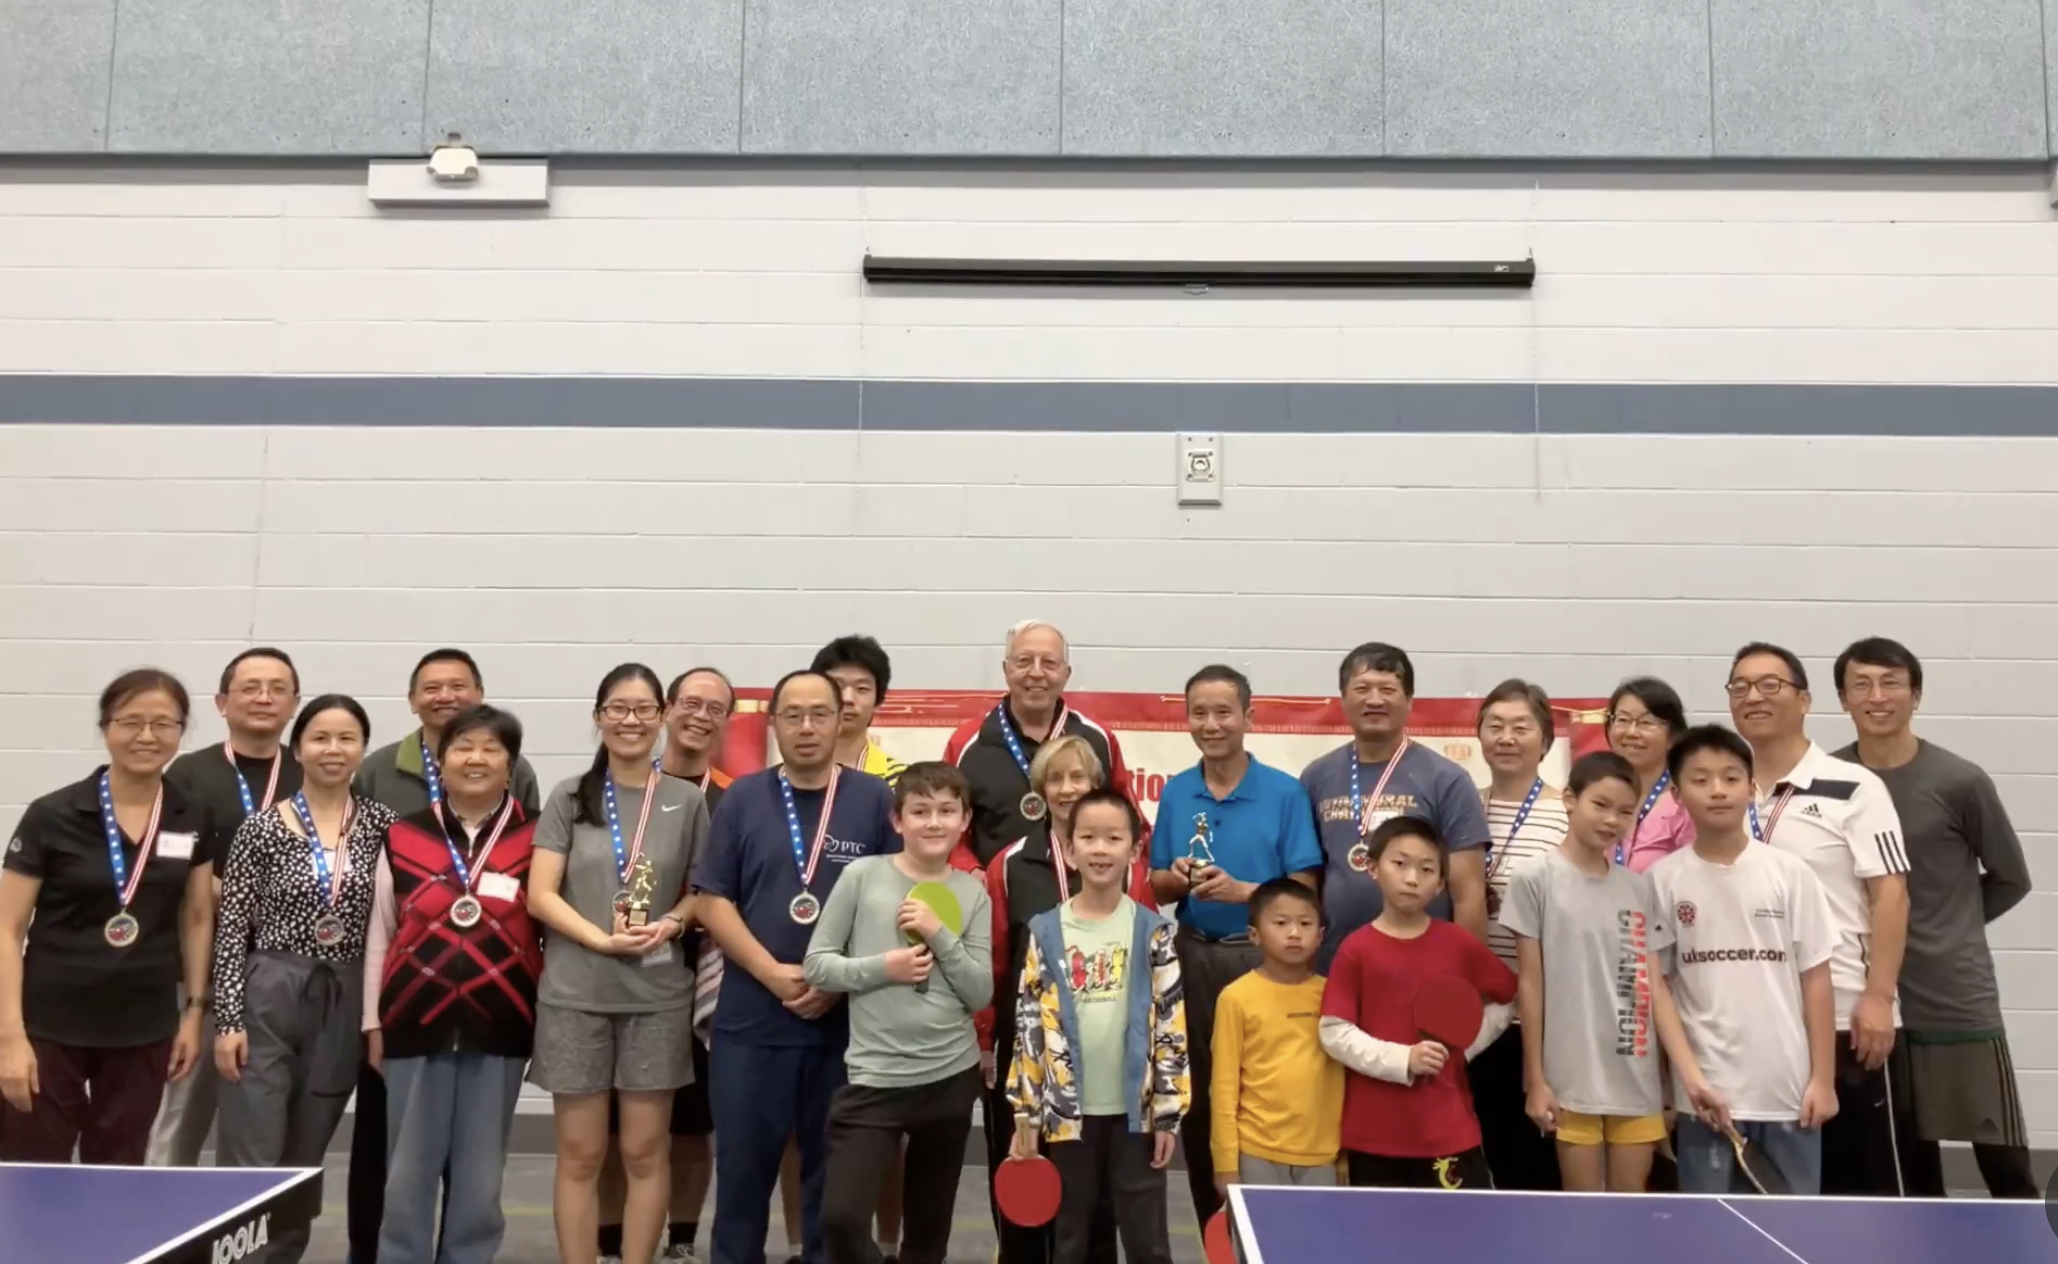 西密华协第二届乒乓球比赛：体育精神与社区团结的完美展示